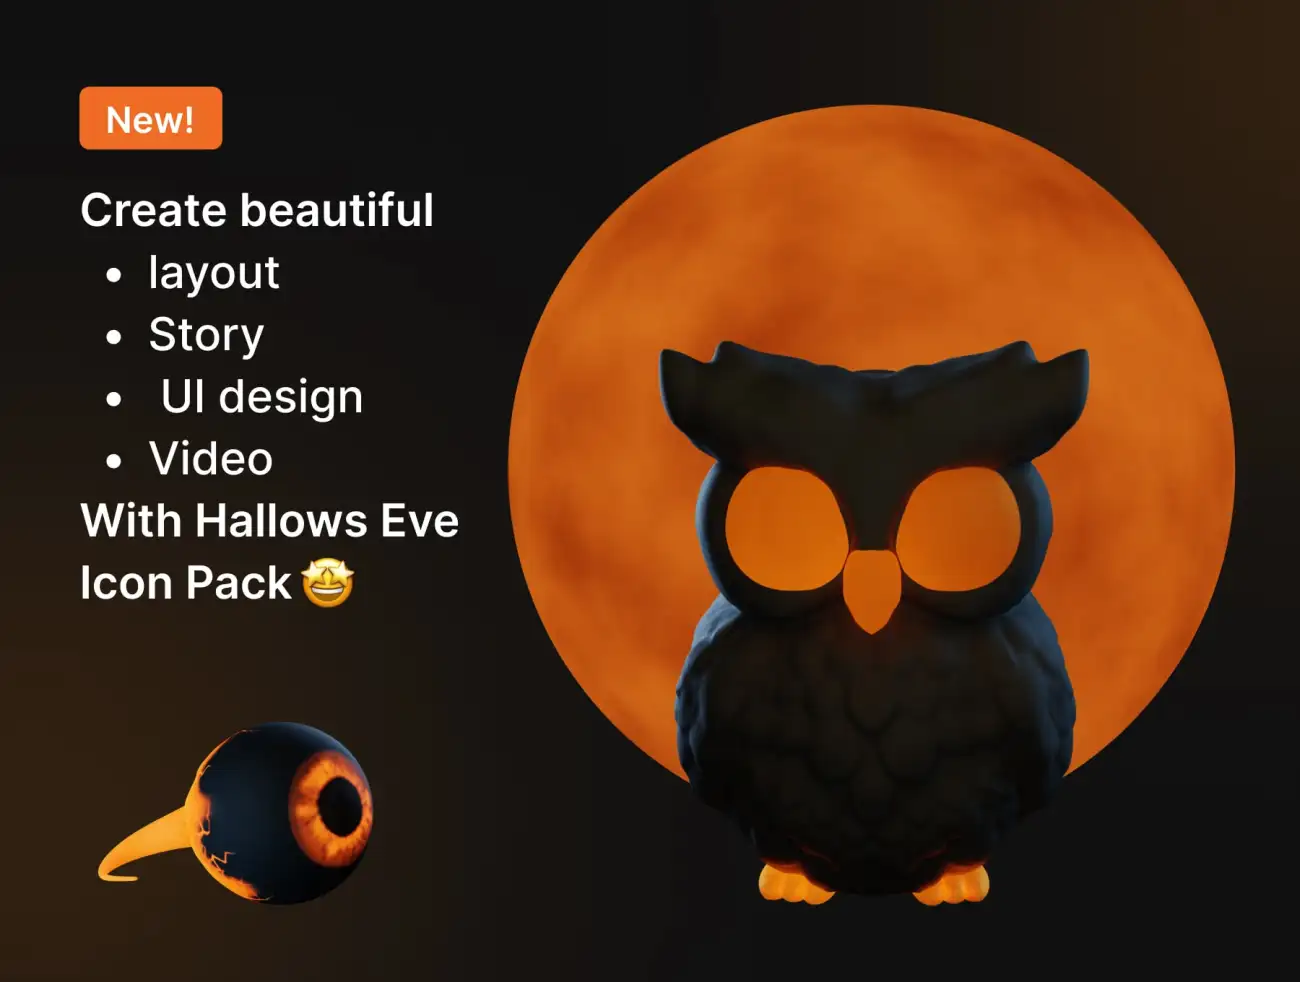 万圣节主题3D图标插图合集 Hallows Eve – Halloween 3D Icon & Sticker Pack插图5